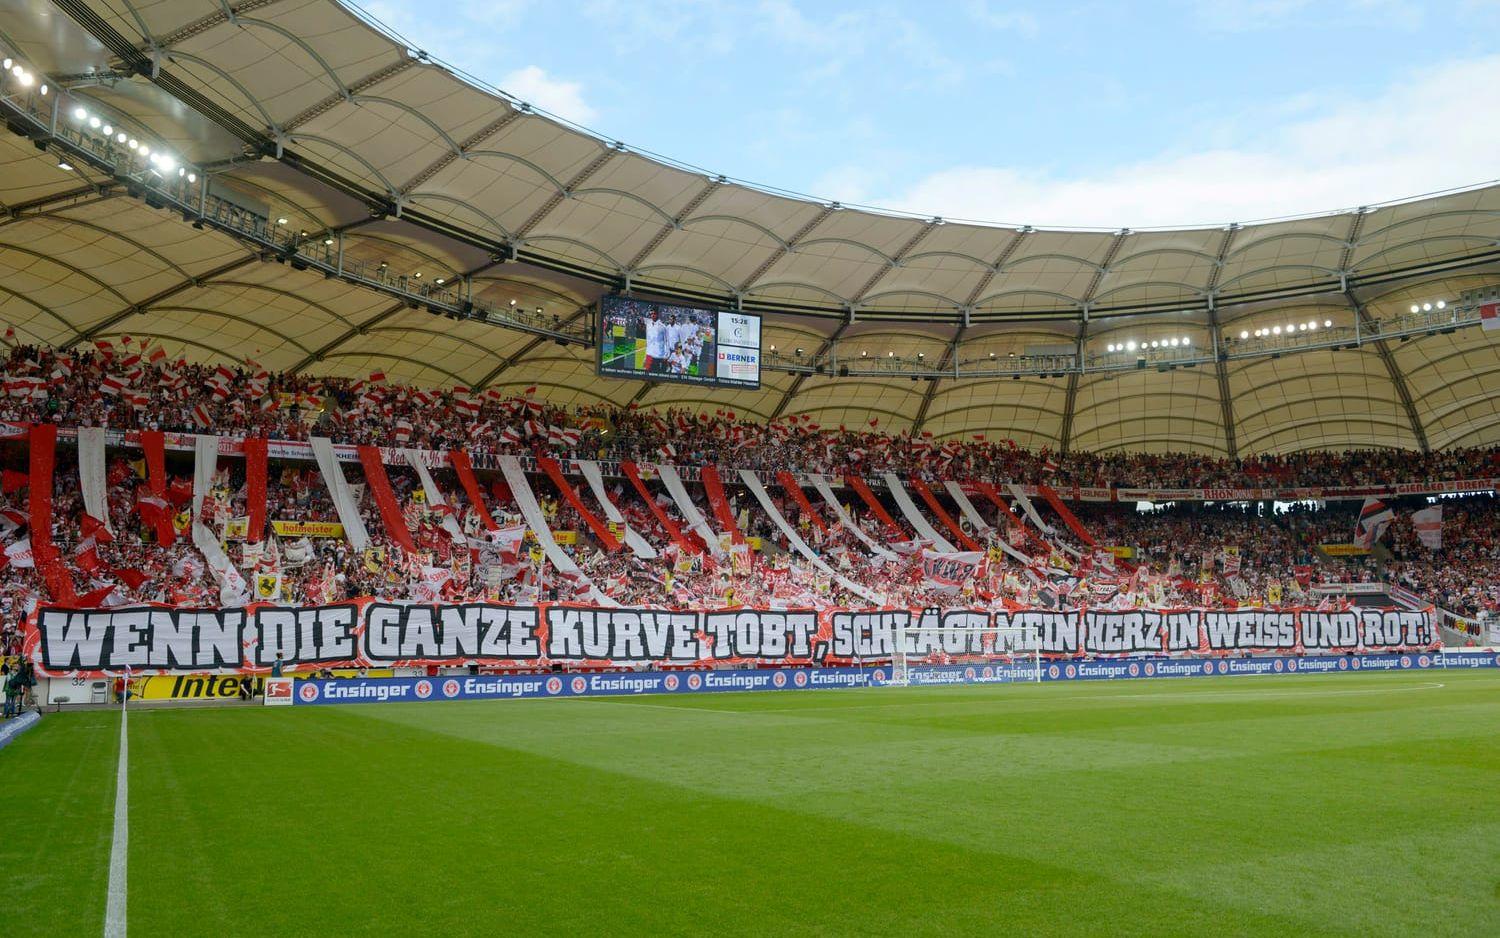 18. Mercedes-Benz Arena där Stuttgart lirar boll tar 60 469 åskådare.